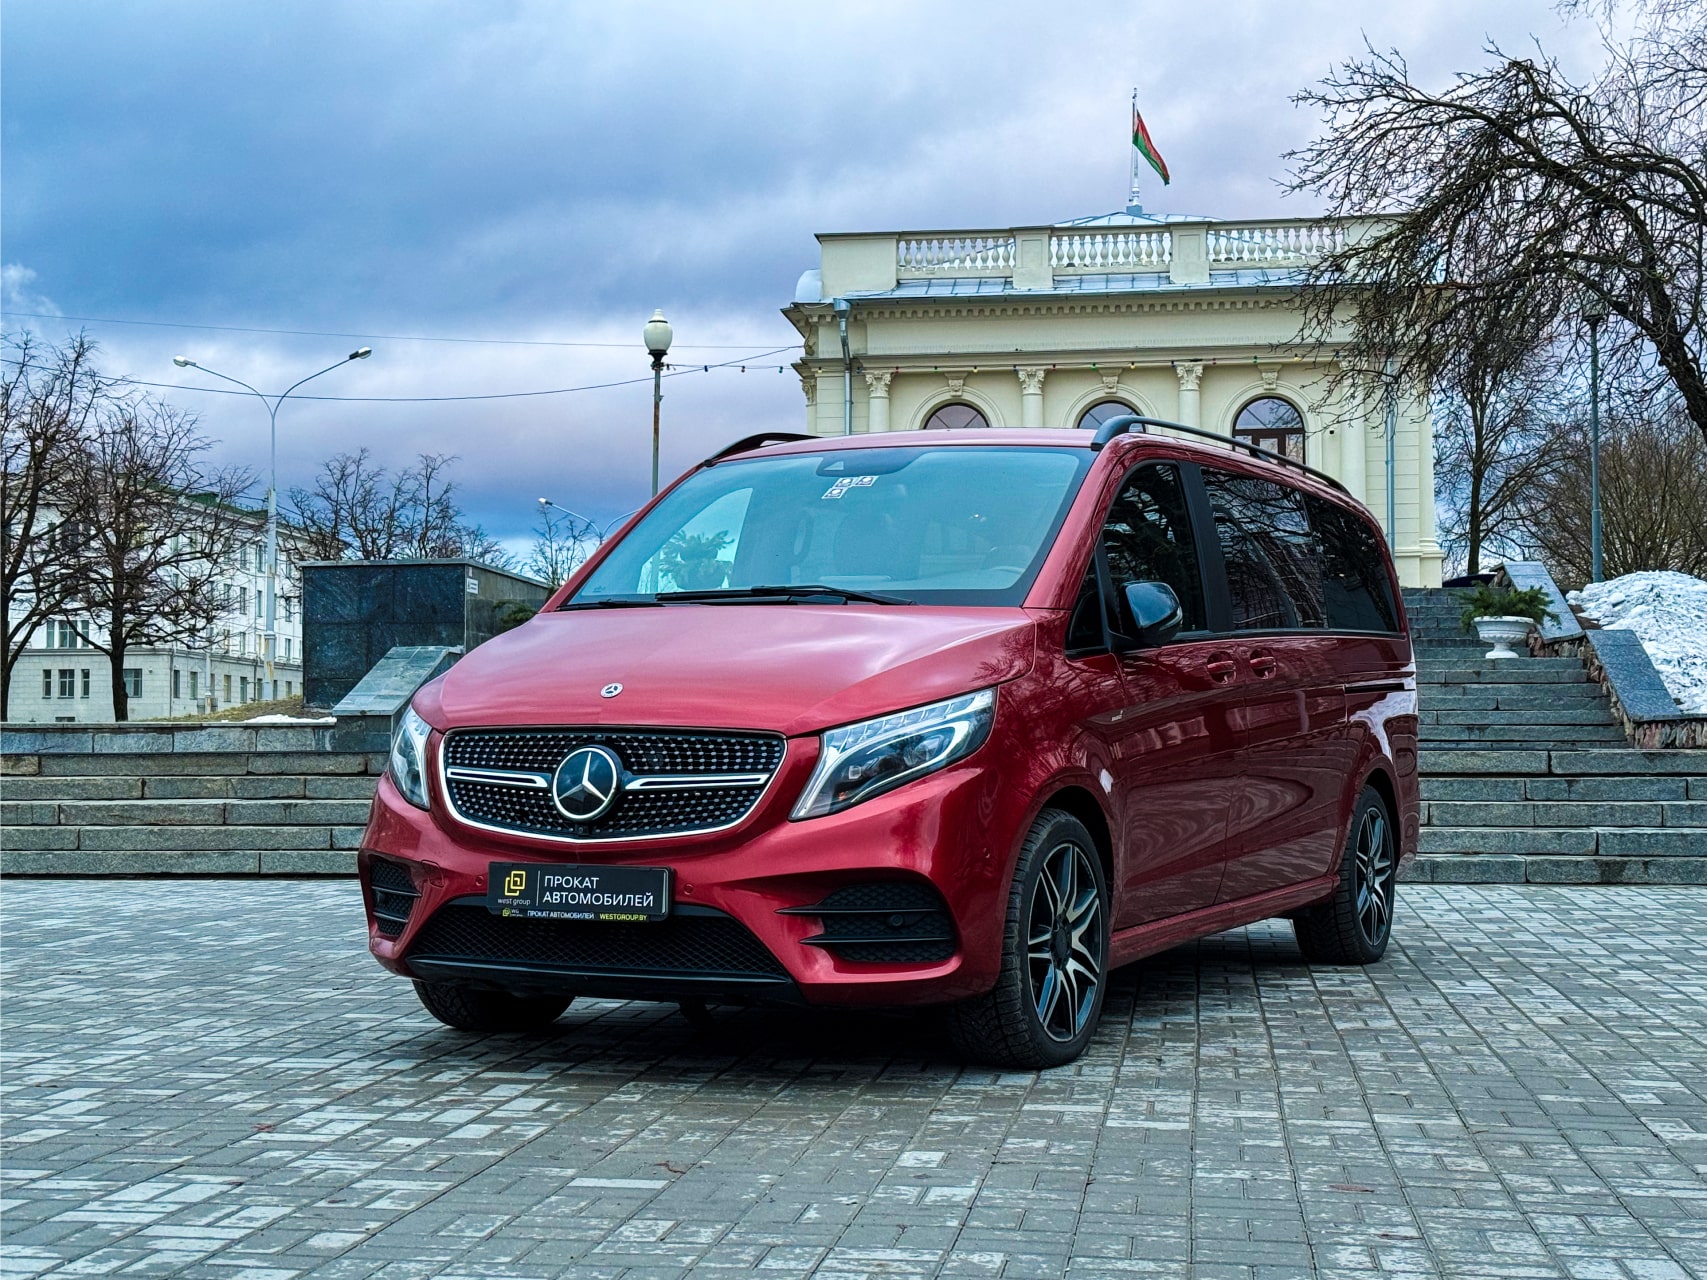 Аренда  Mercedes-Benz V-class V250 4MATIC  Brabus  6+1  7 класса 2018-2022 года в городе Минск от 155 $/сутки,  двигатель: ДТ , объем 2.0 литров, КАСКО (Мультидрайв), без водителя, вид 1 - West Group